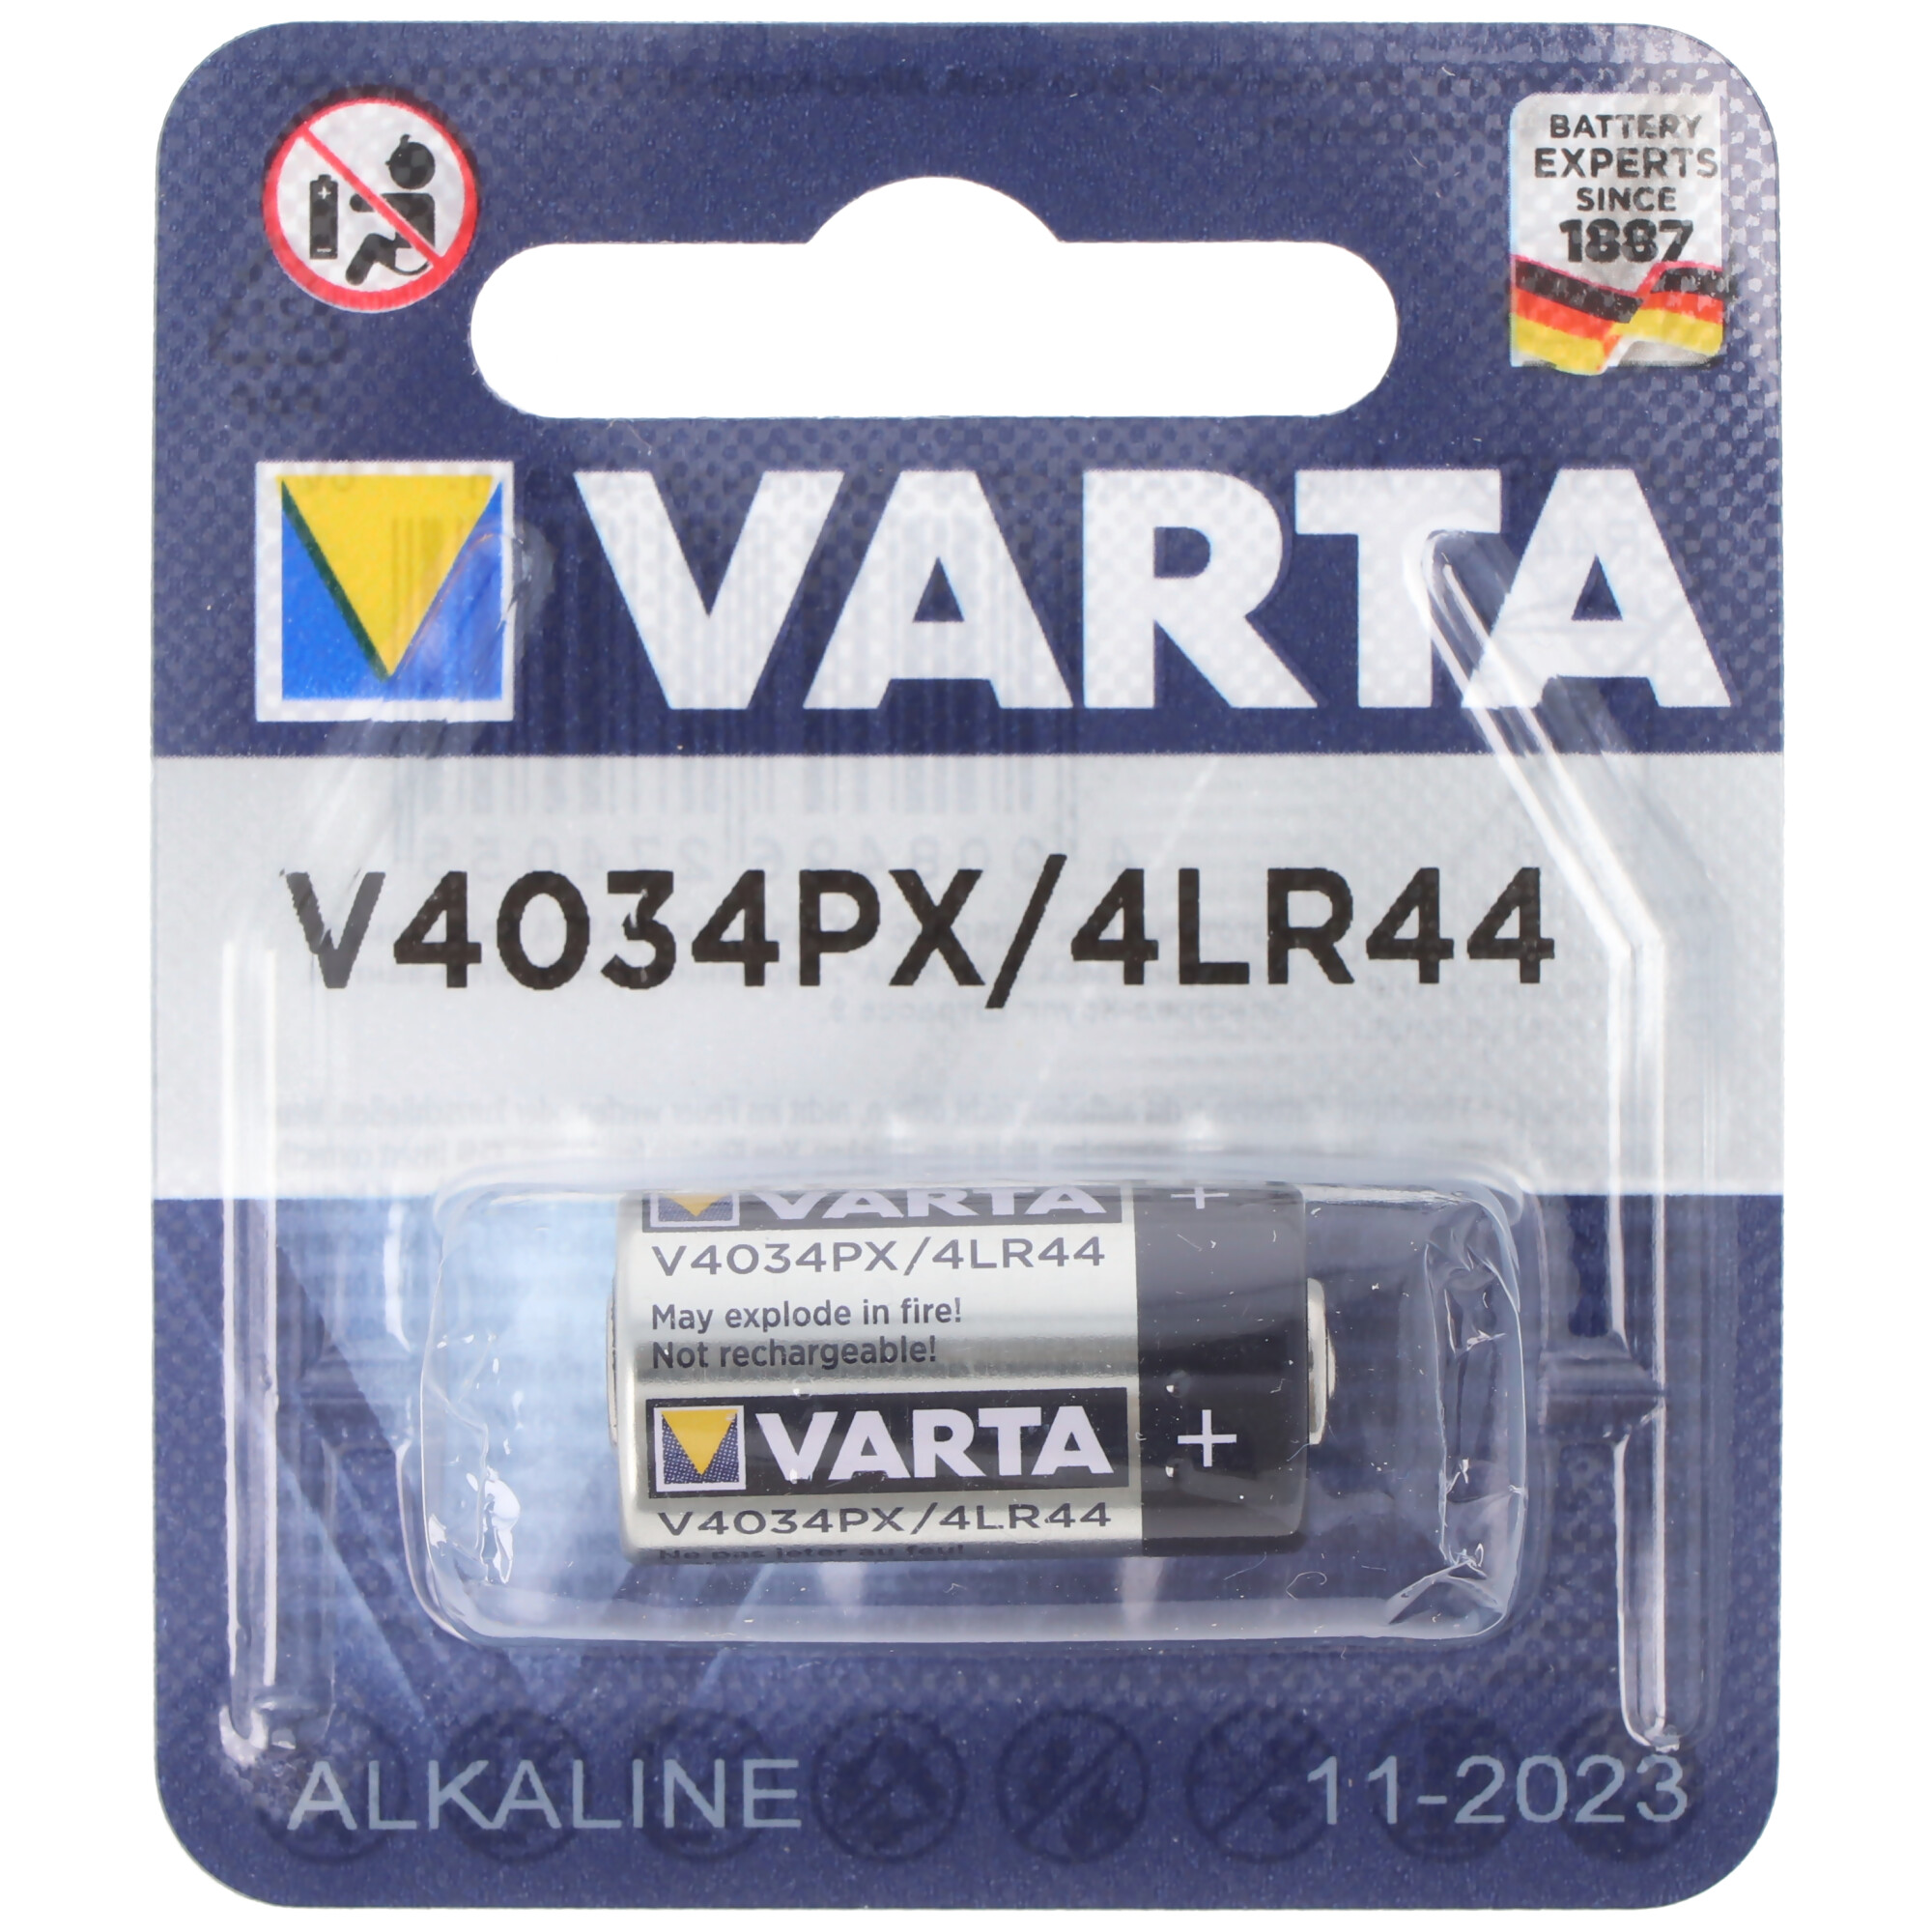 2 x Varta V4034PX 6V Foto Batterie 4LR44 PX28A 4SR44 A544-170mAh 